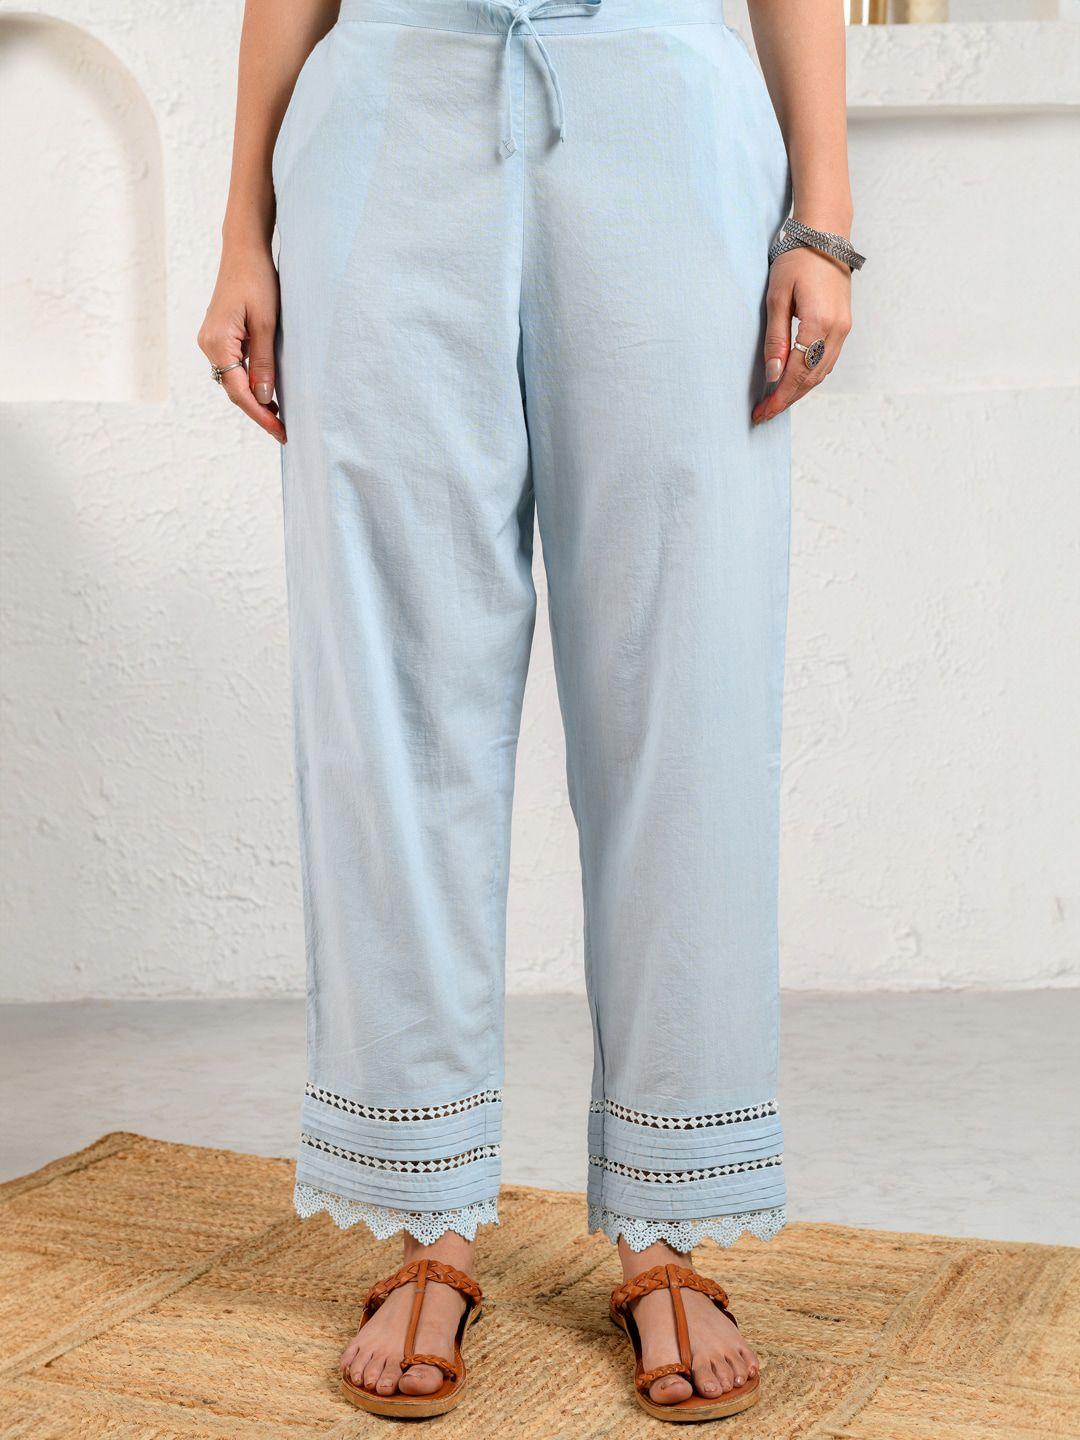 prakriti-jaipur-women-mid-rise-cotton-lace-ethnic-trouser